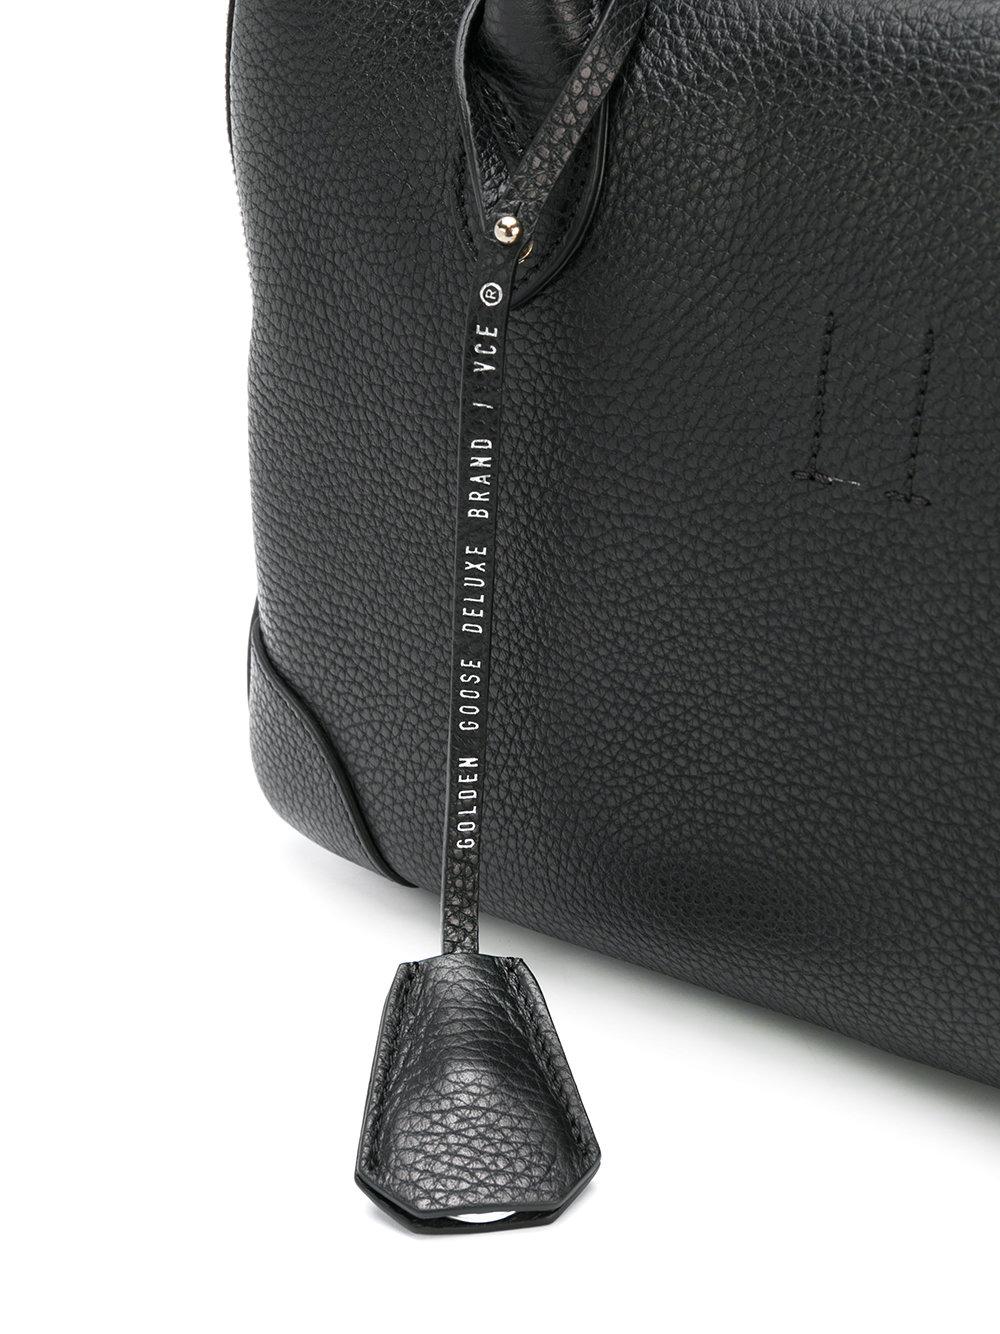 Golden Goose Deluxe Brand Handbags - Lampoo